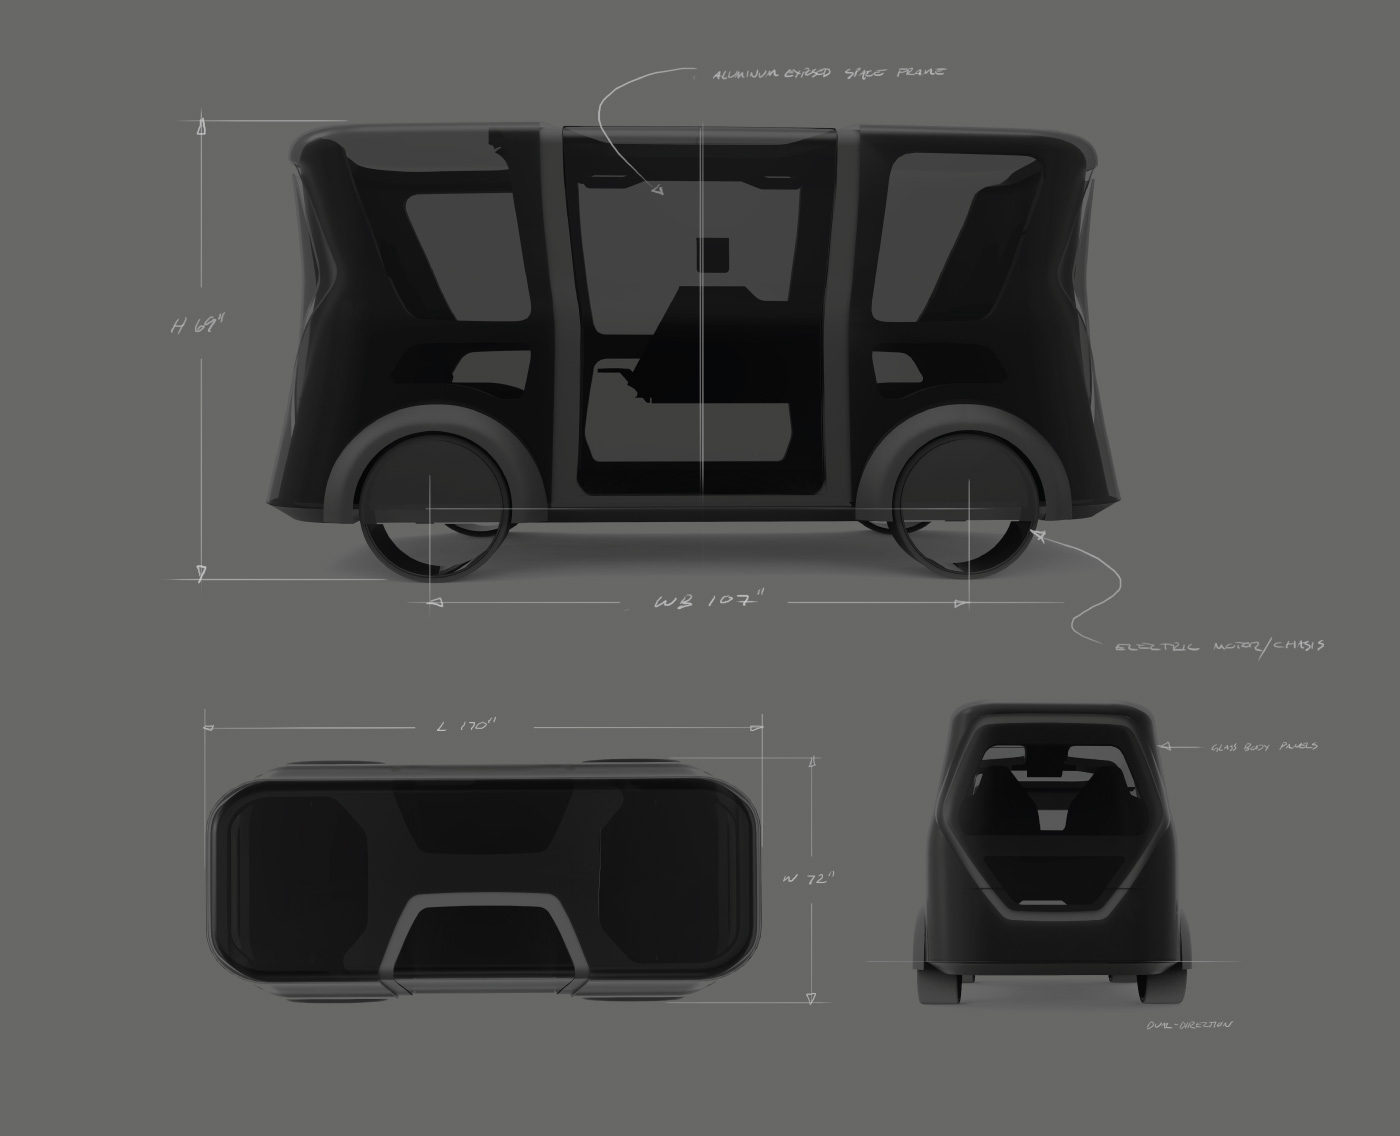 taxi productdesign Interior industrialdesign